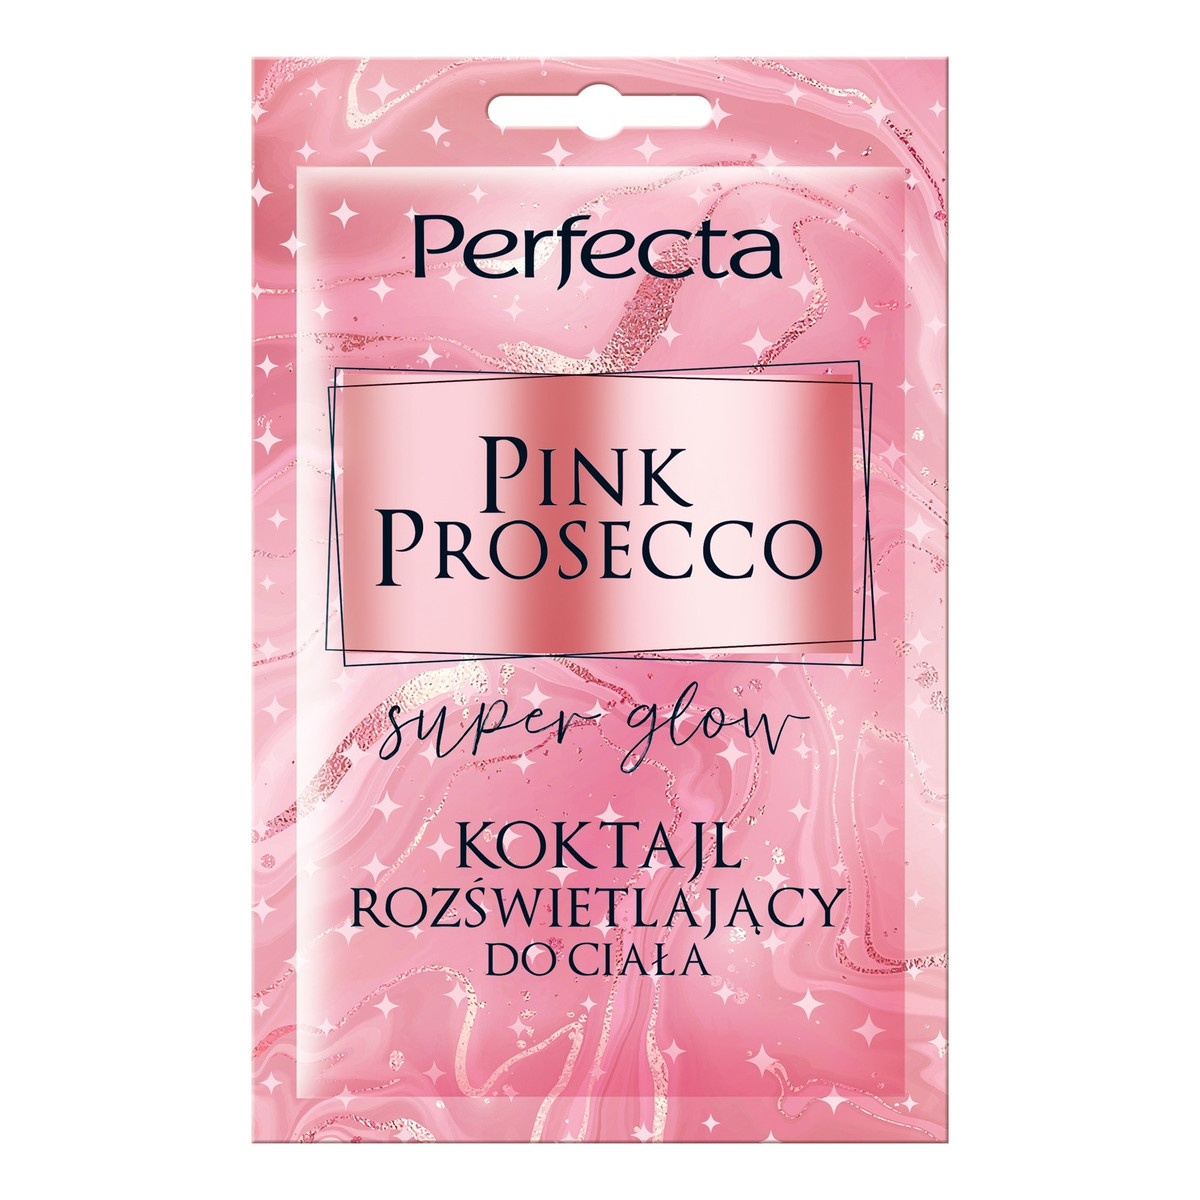 Perfecta Super Glow Koktajl rozświetlający do ciała Pink Prosecco 18ml